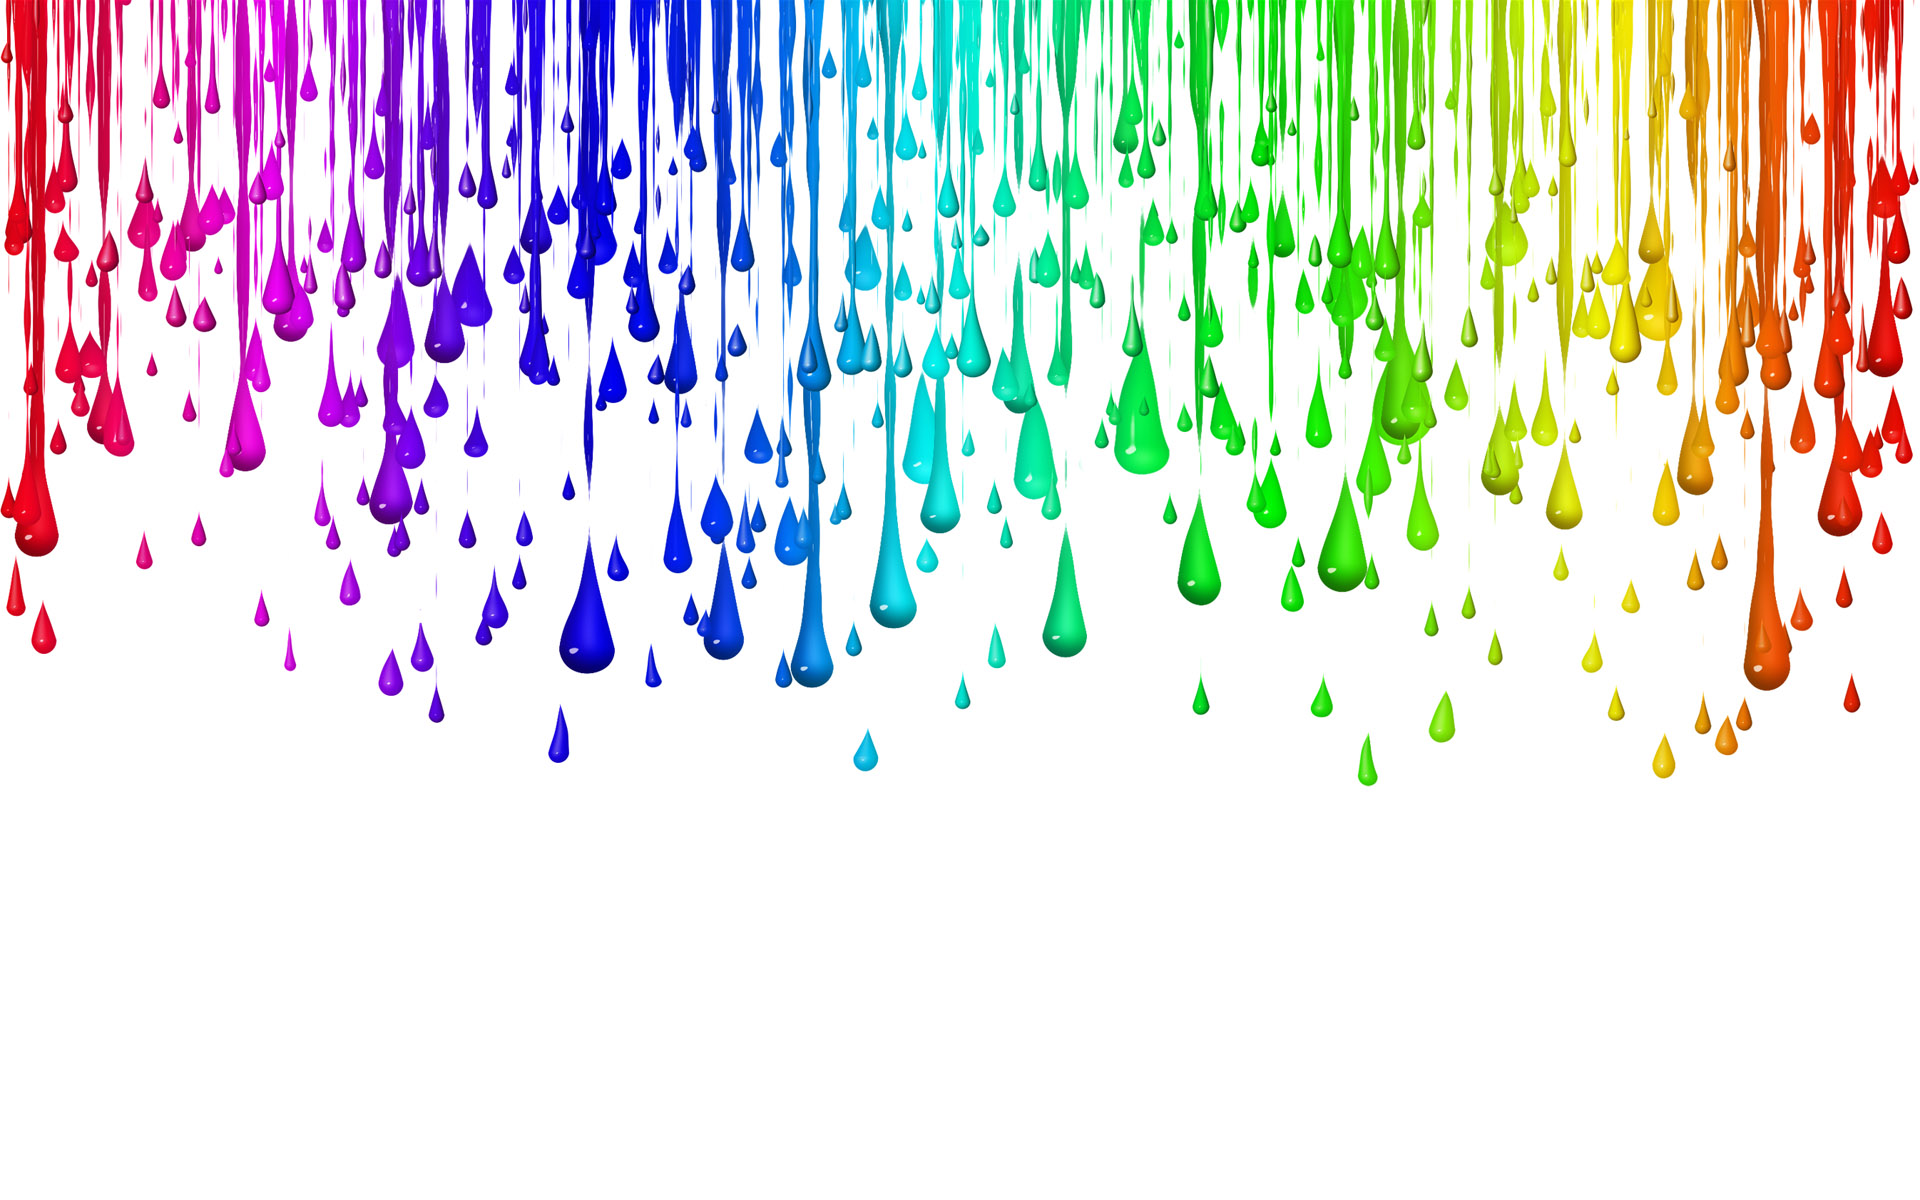 drops, paint, texture paints, background, download photo, color paint texture background